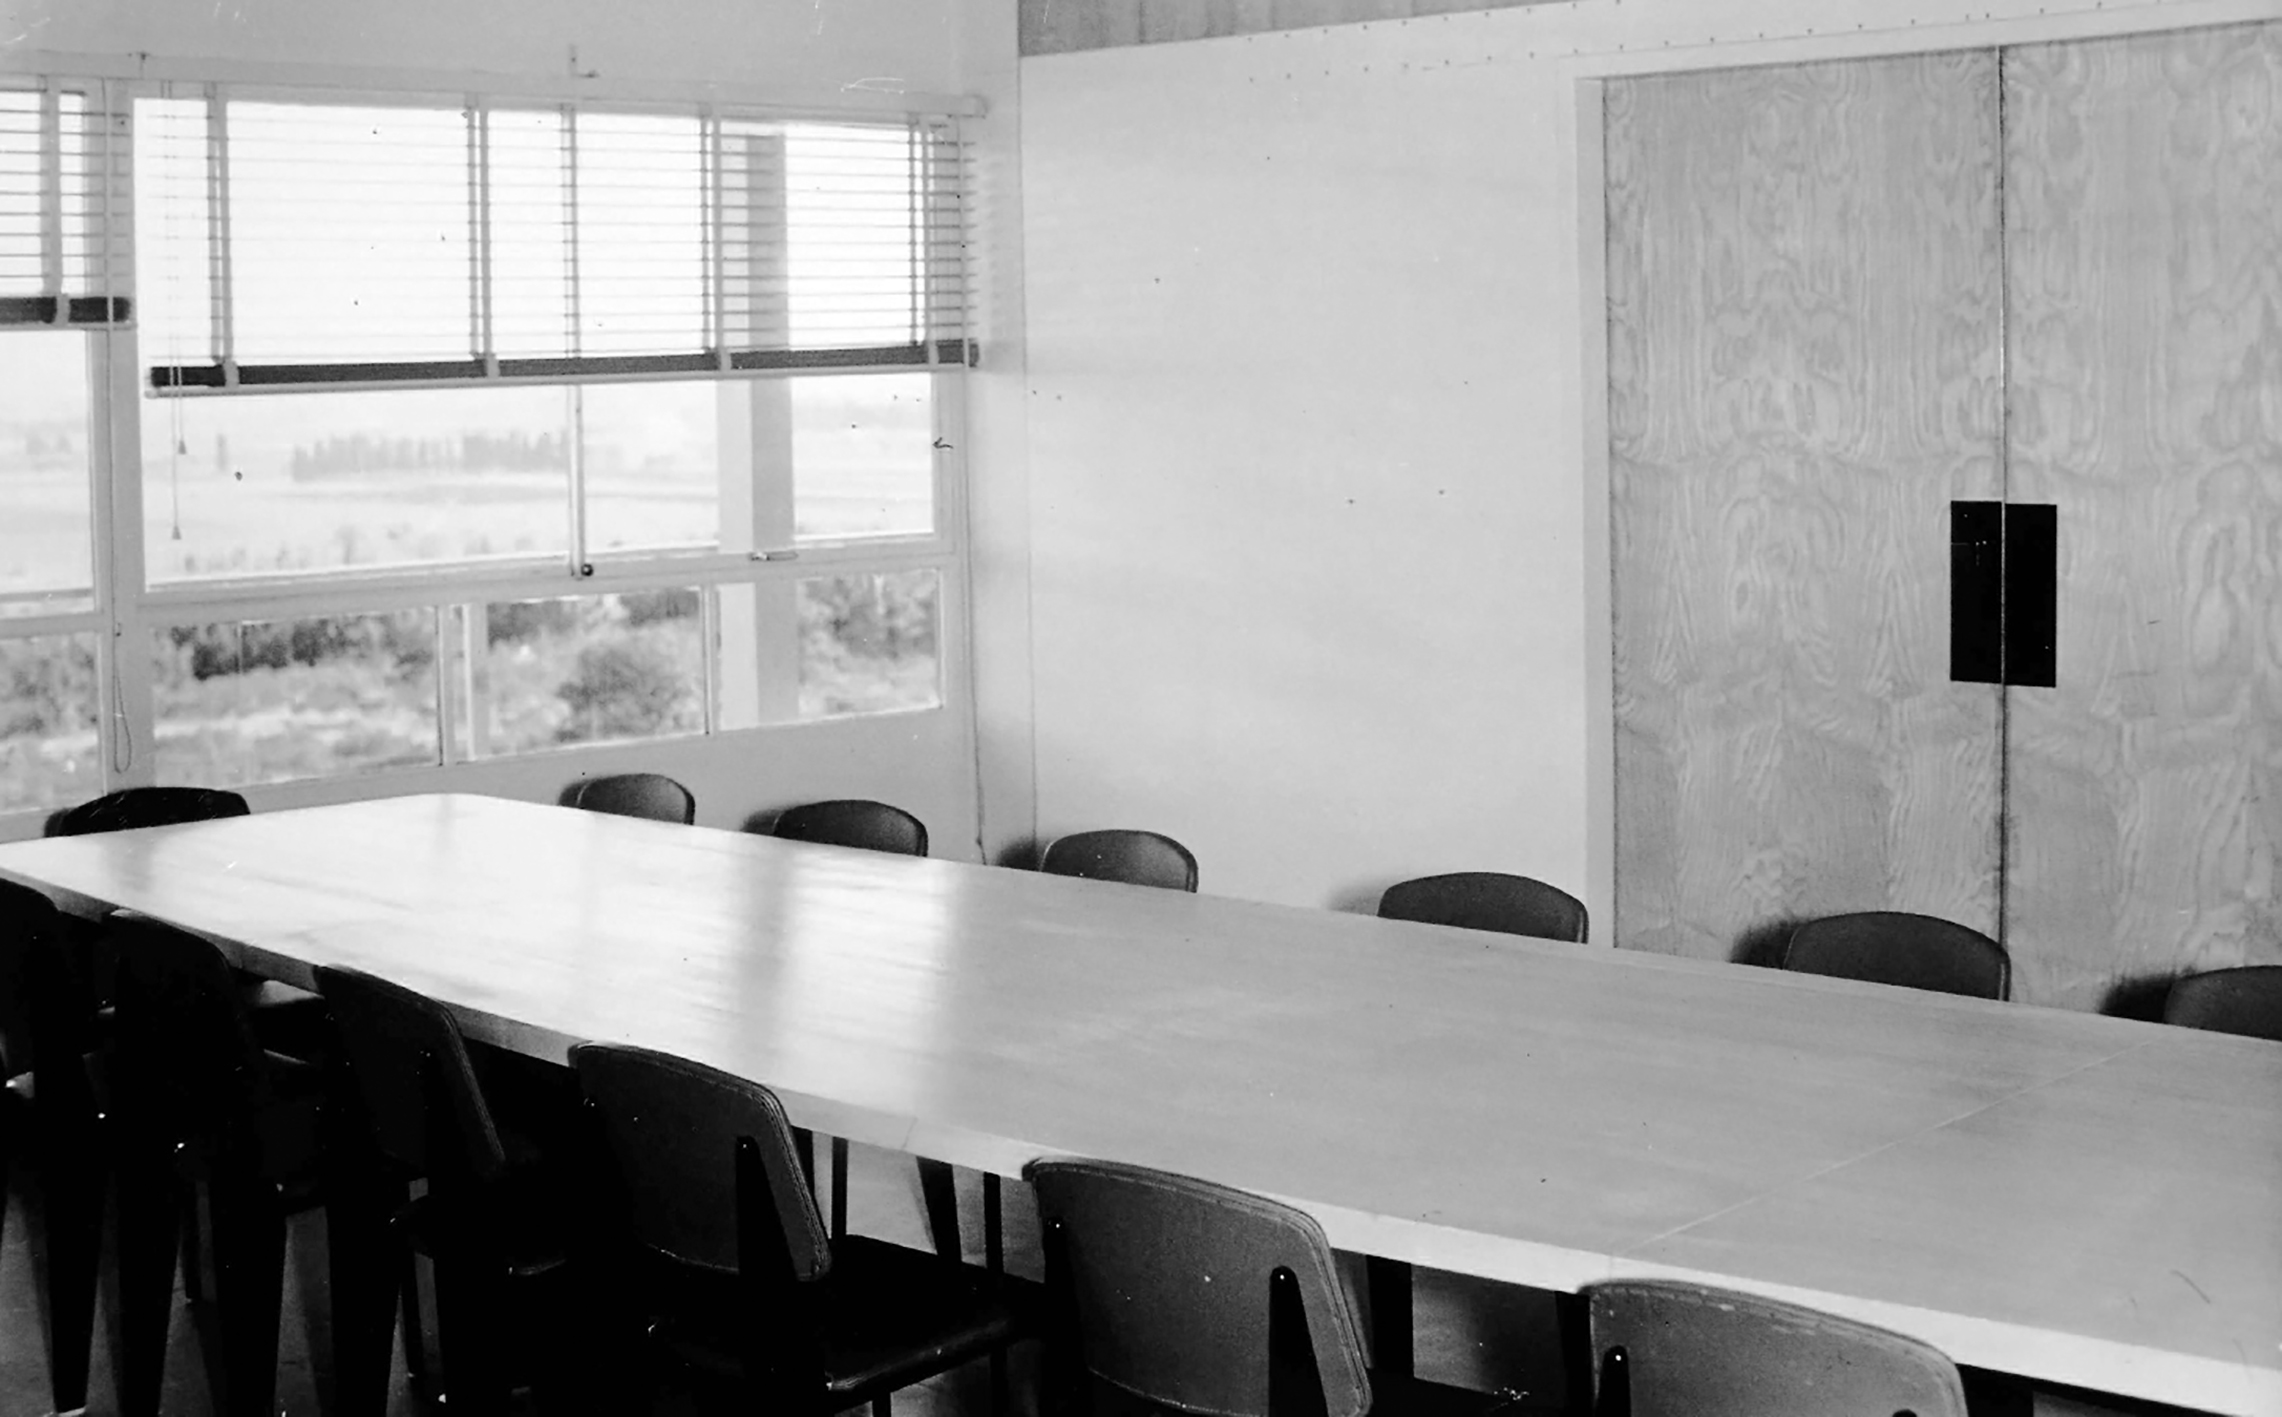 Commissariat à l’énergie atomique, centre de Marcoule, Bagnols-sur-Cèze. La salle de réunion équipée de chaises Métropole n° 306, c. 1955.